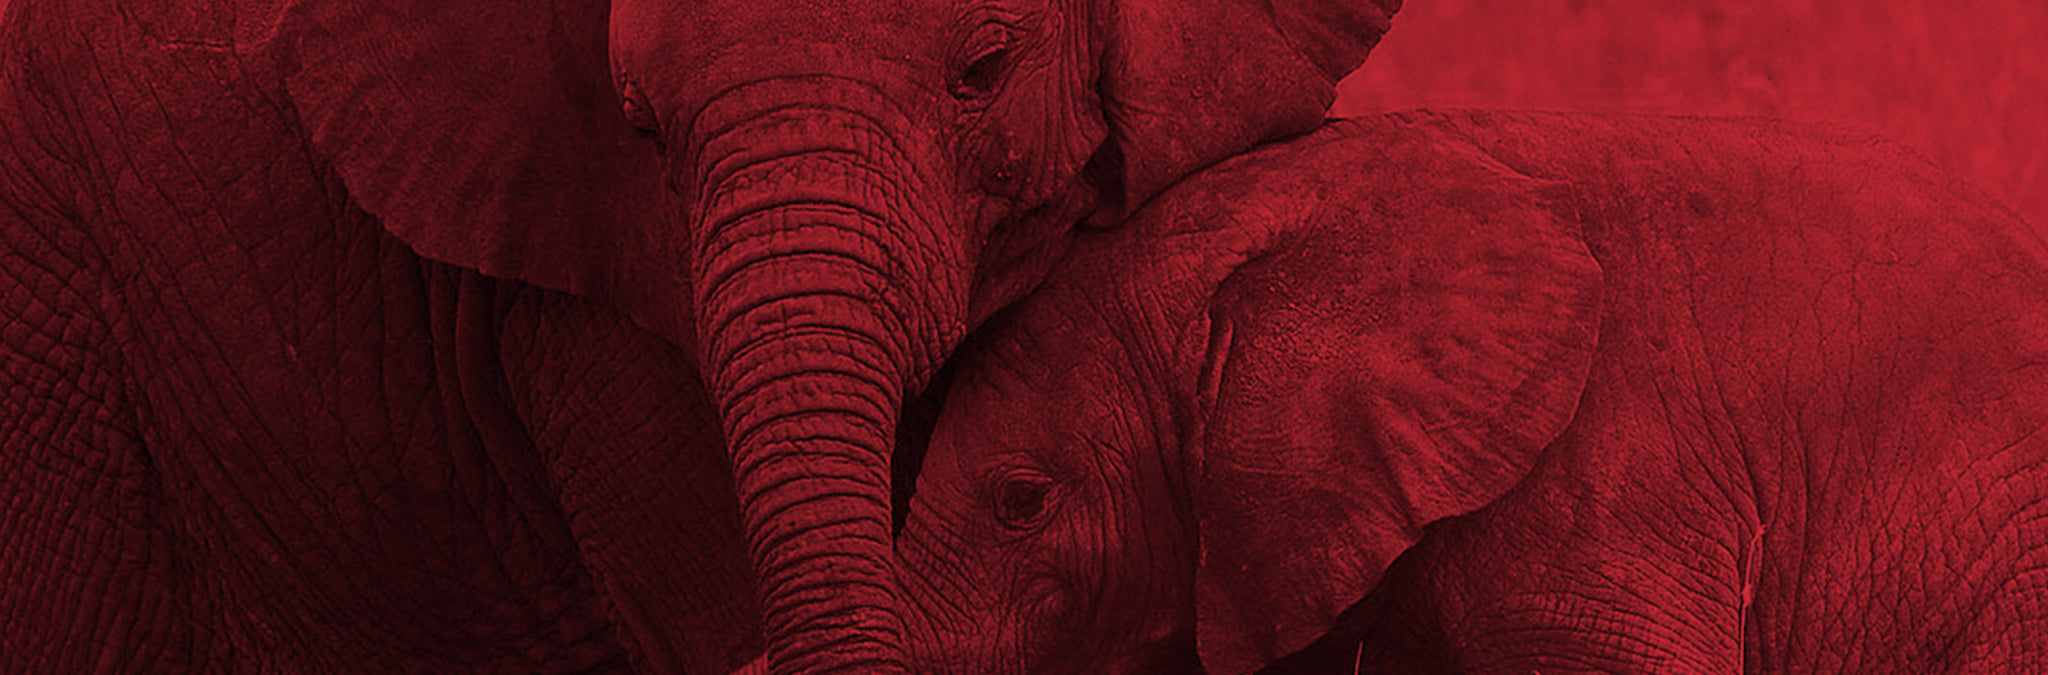 End Ivory Trade Header Image